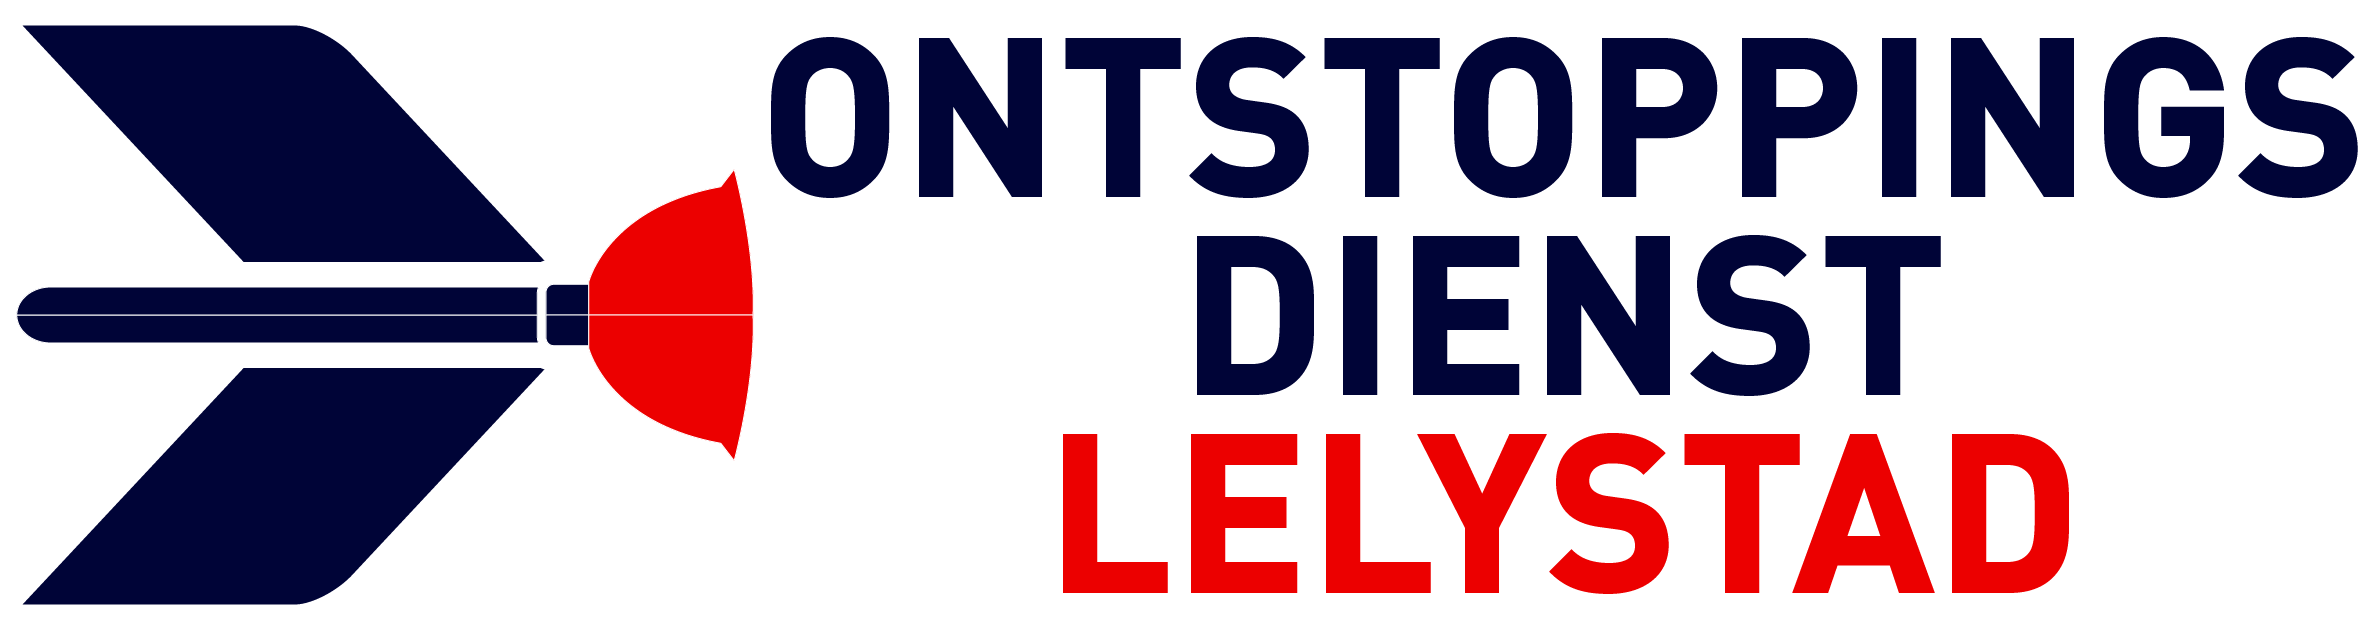 Ontstoppingsdienst Lelystad logo